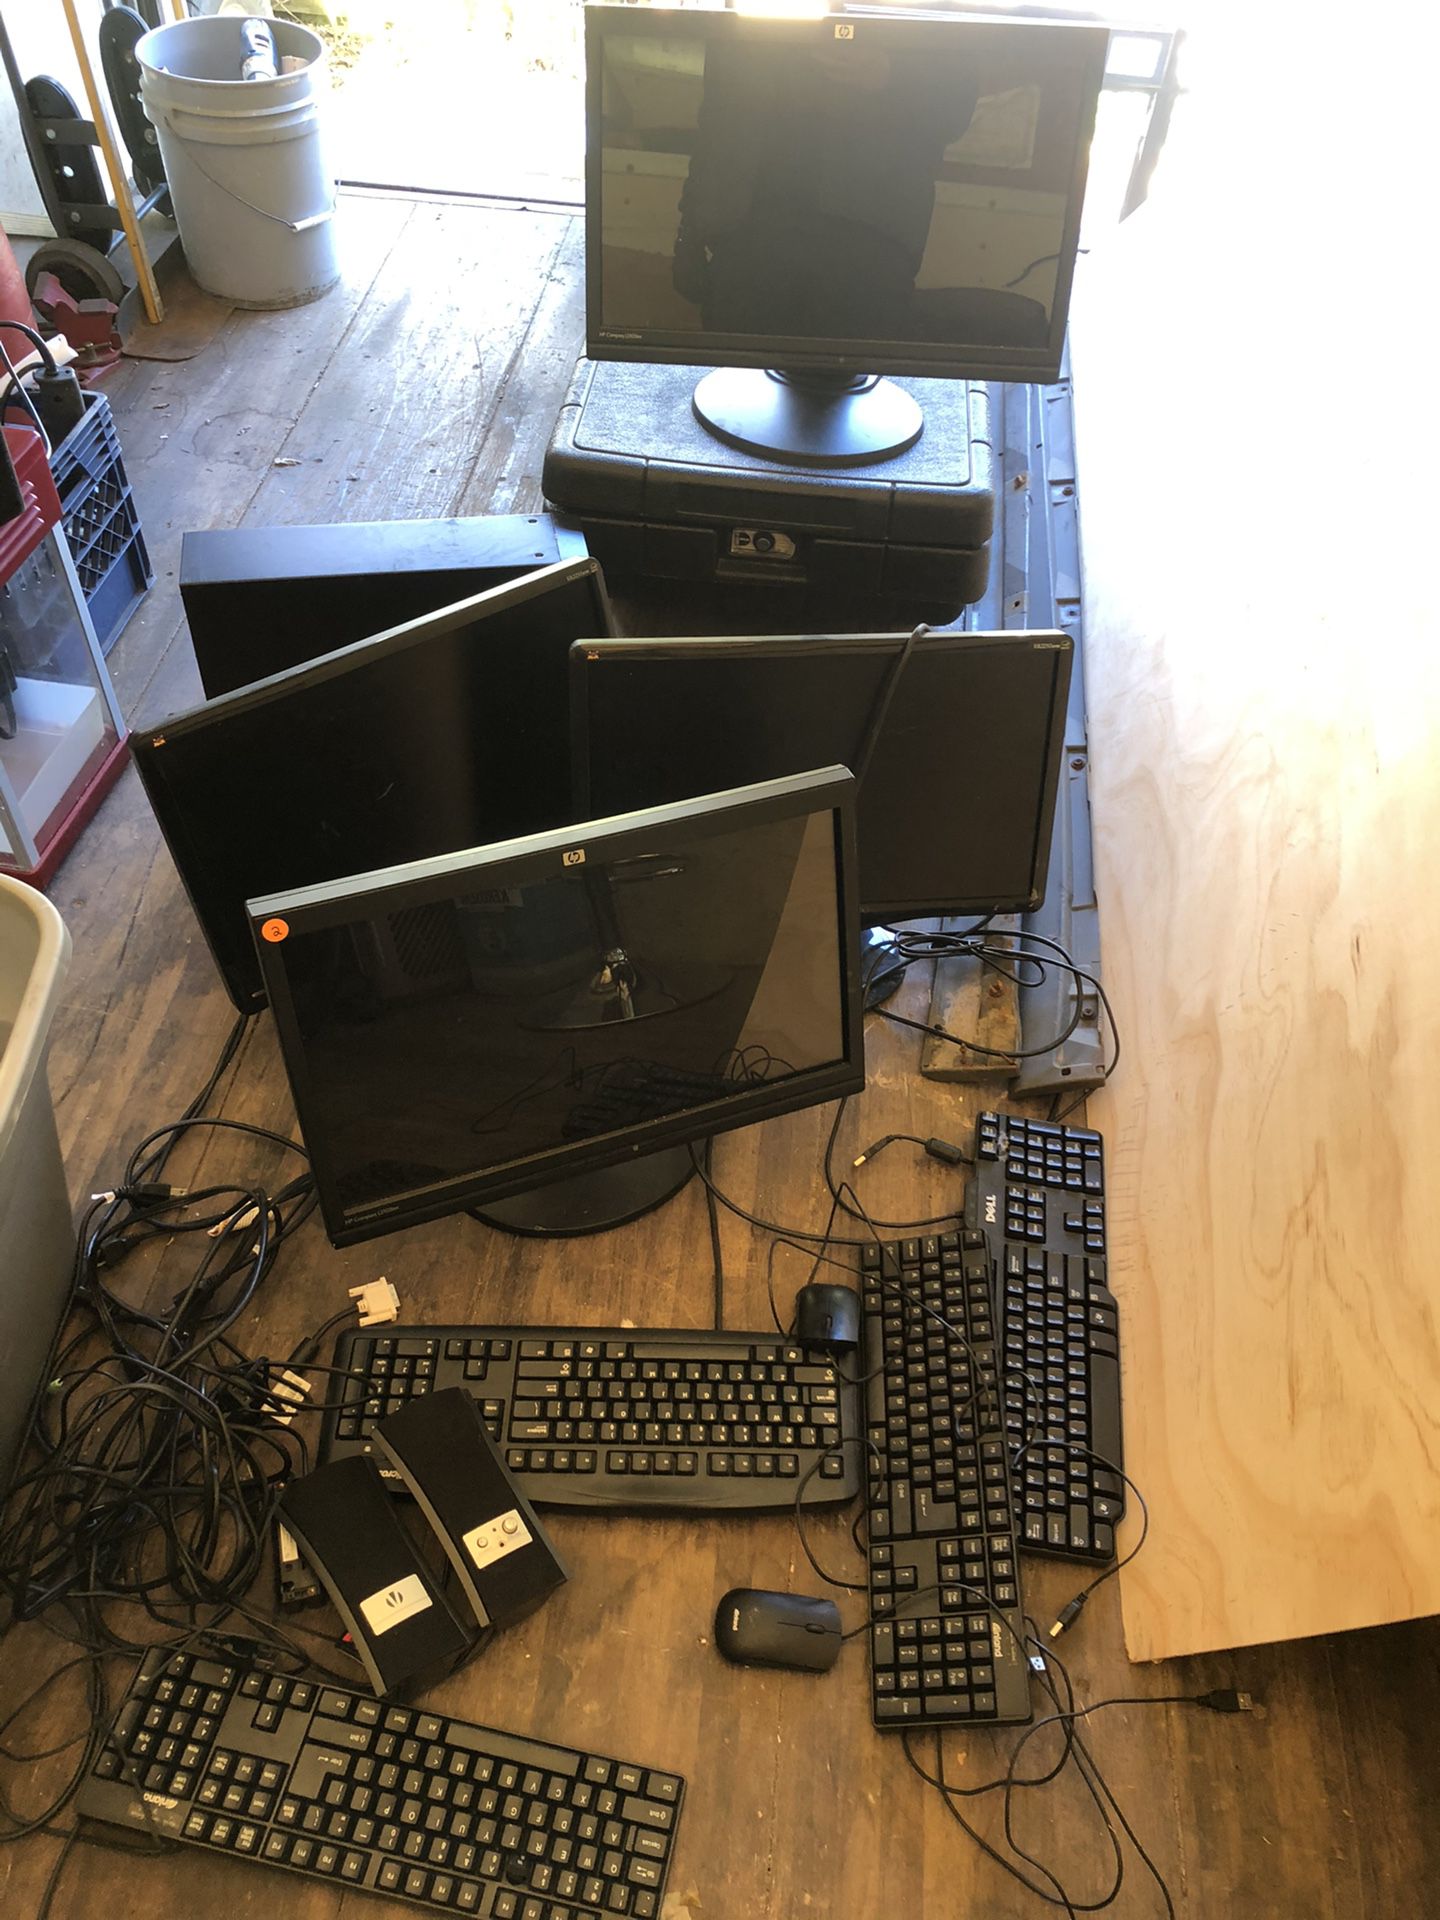 Computer monitors keyboards